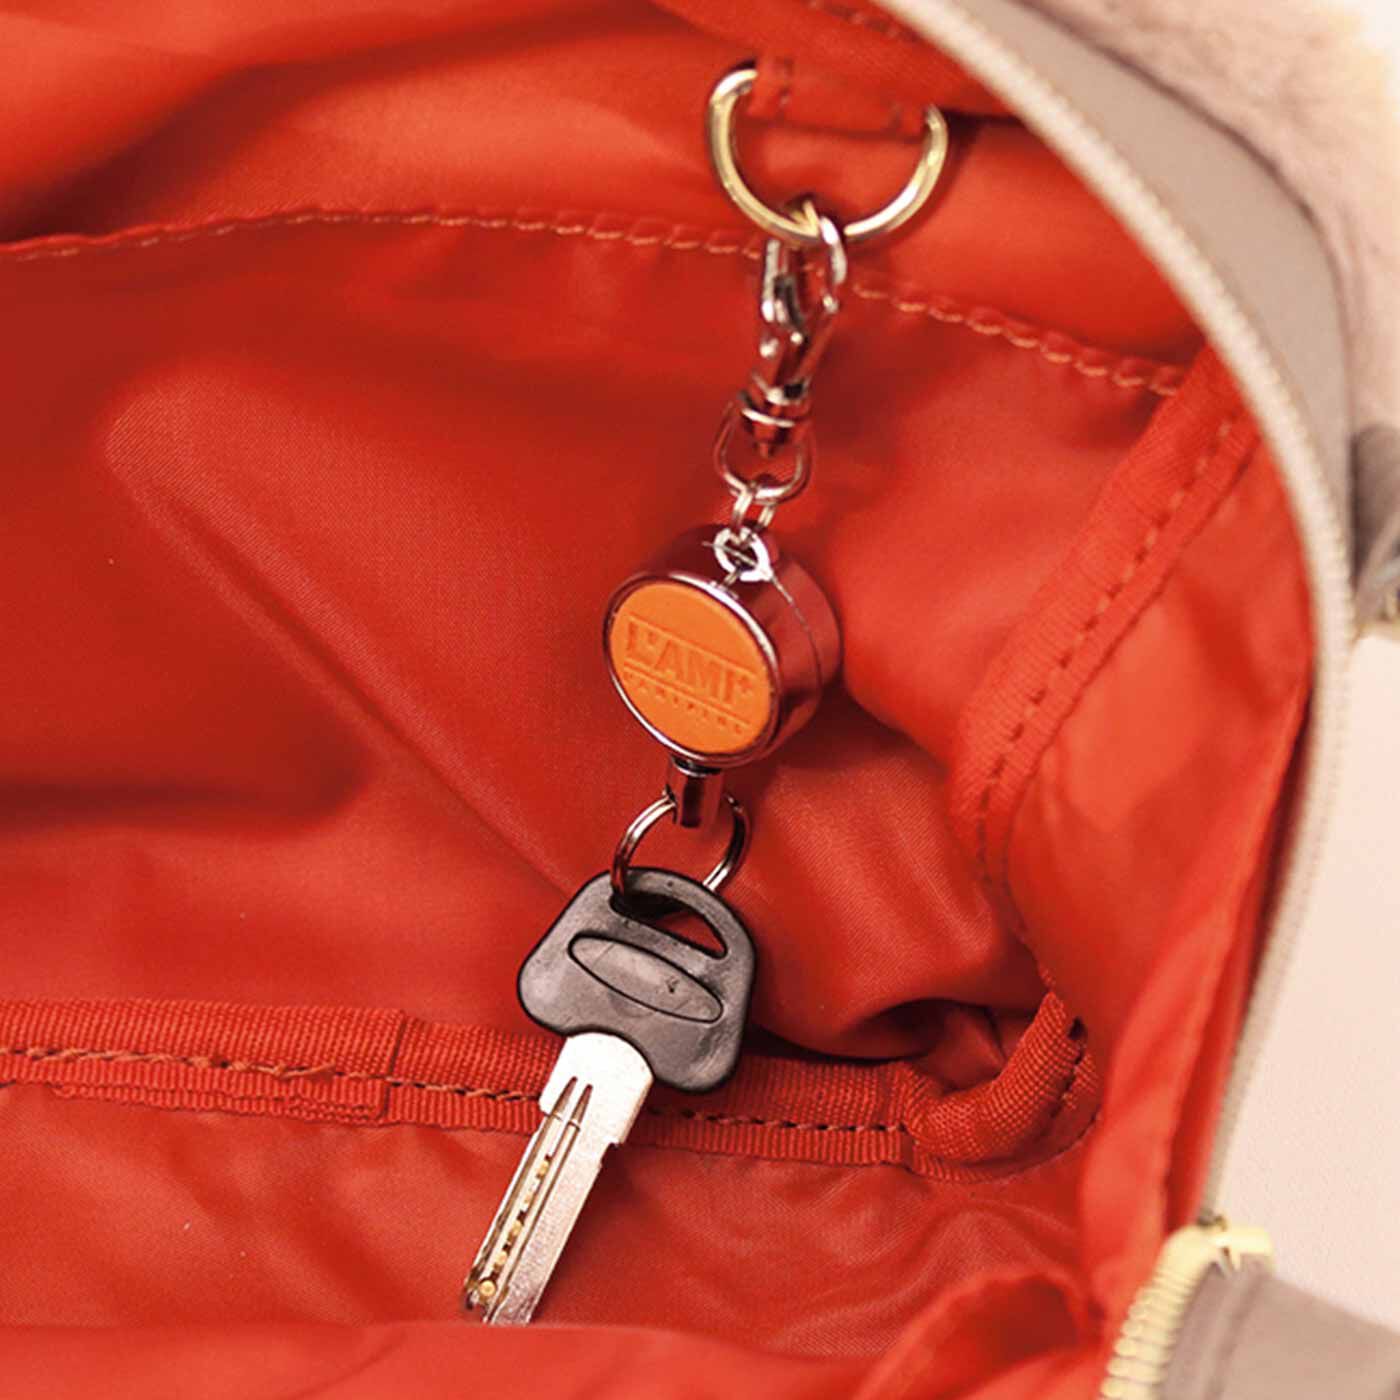 L'AMIPLUS|ラミプリュス 手ざわりふわふわ♪ 気分軽やかぷっくり マカロンショルダーバッグの会|内側両側面に内ポケット付き。Dカンにはキーリールやパスケースをつないでおけます。